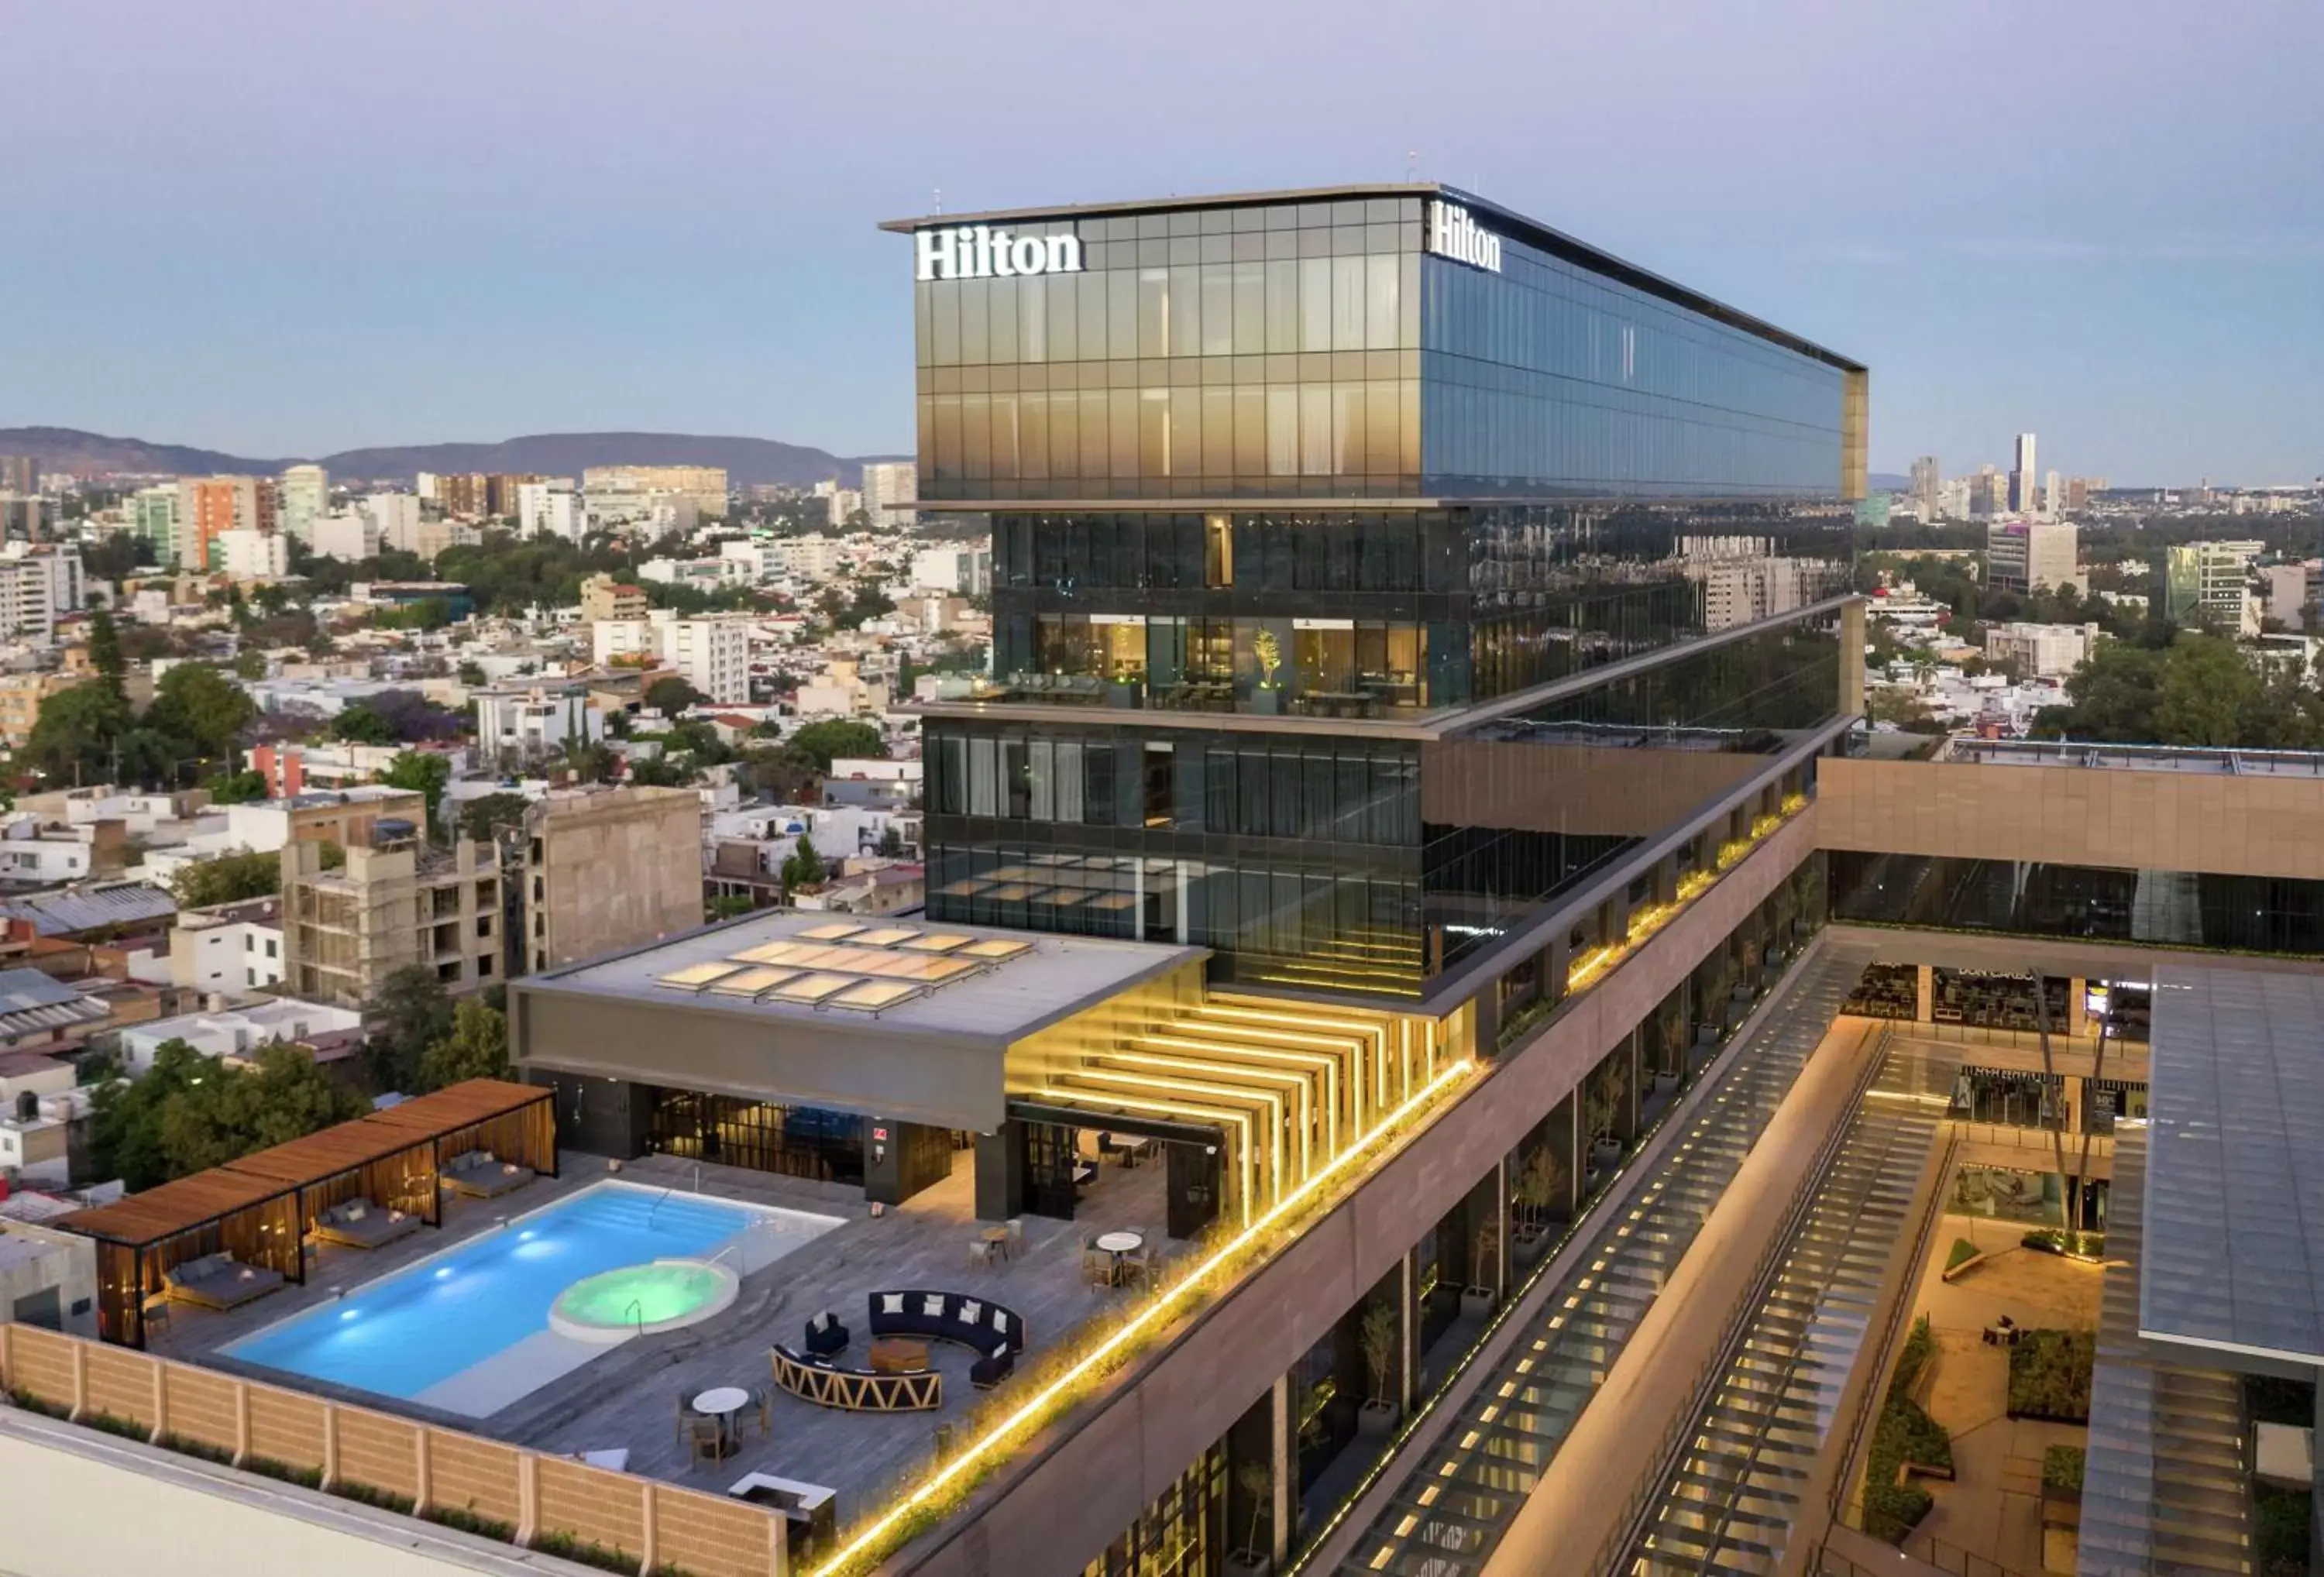 Property building, Pool View in Hilton Guadalajara Midtown